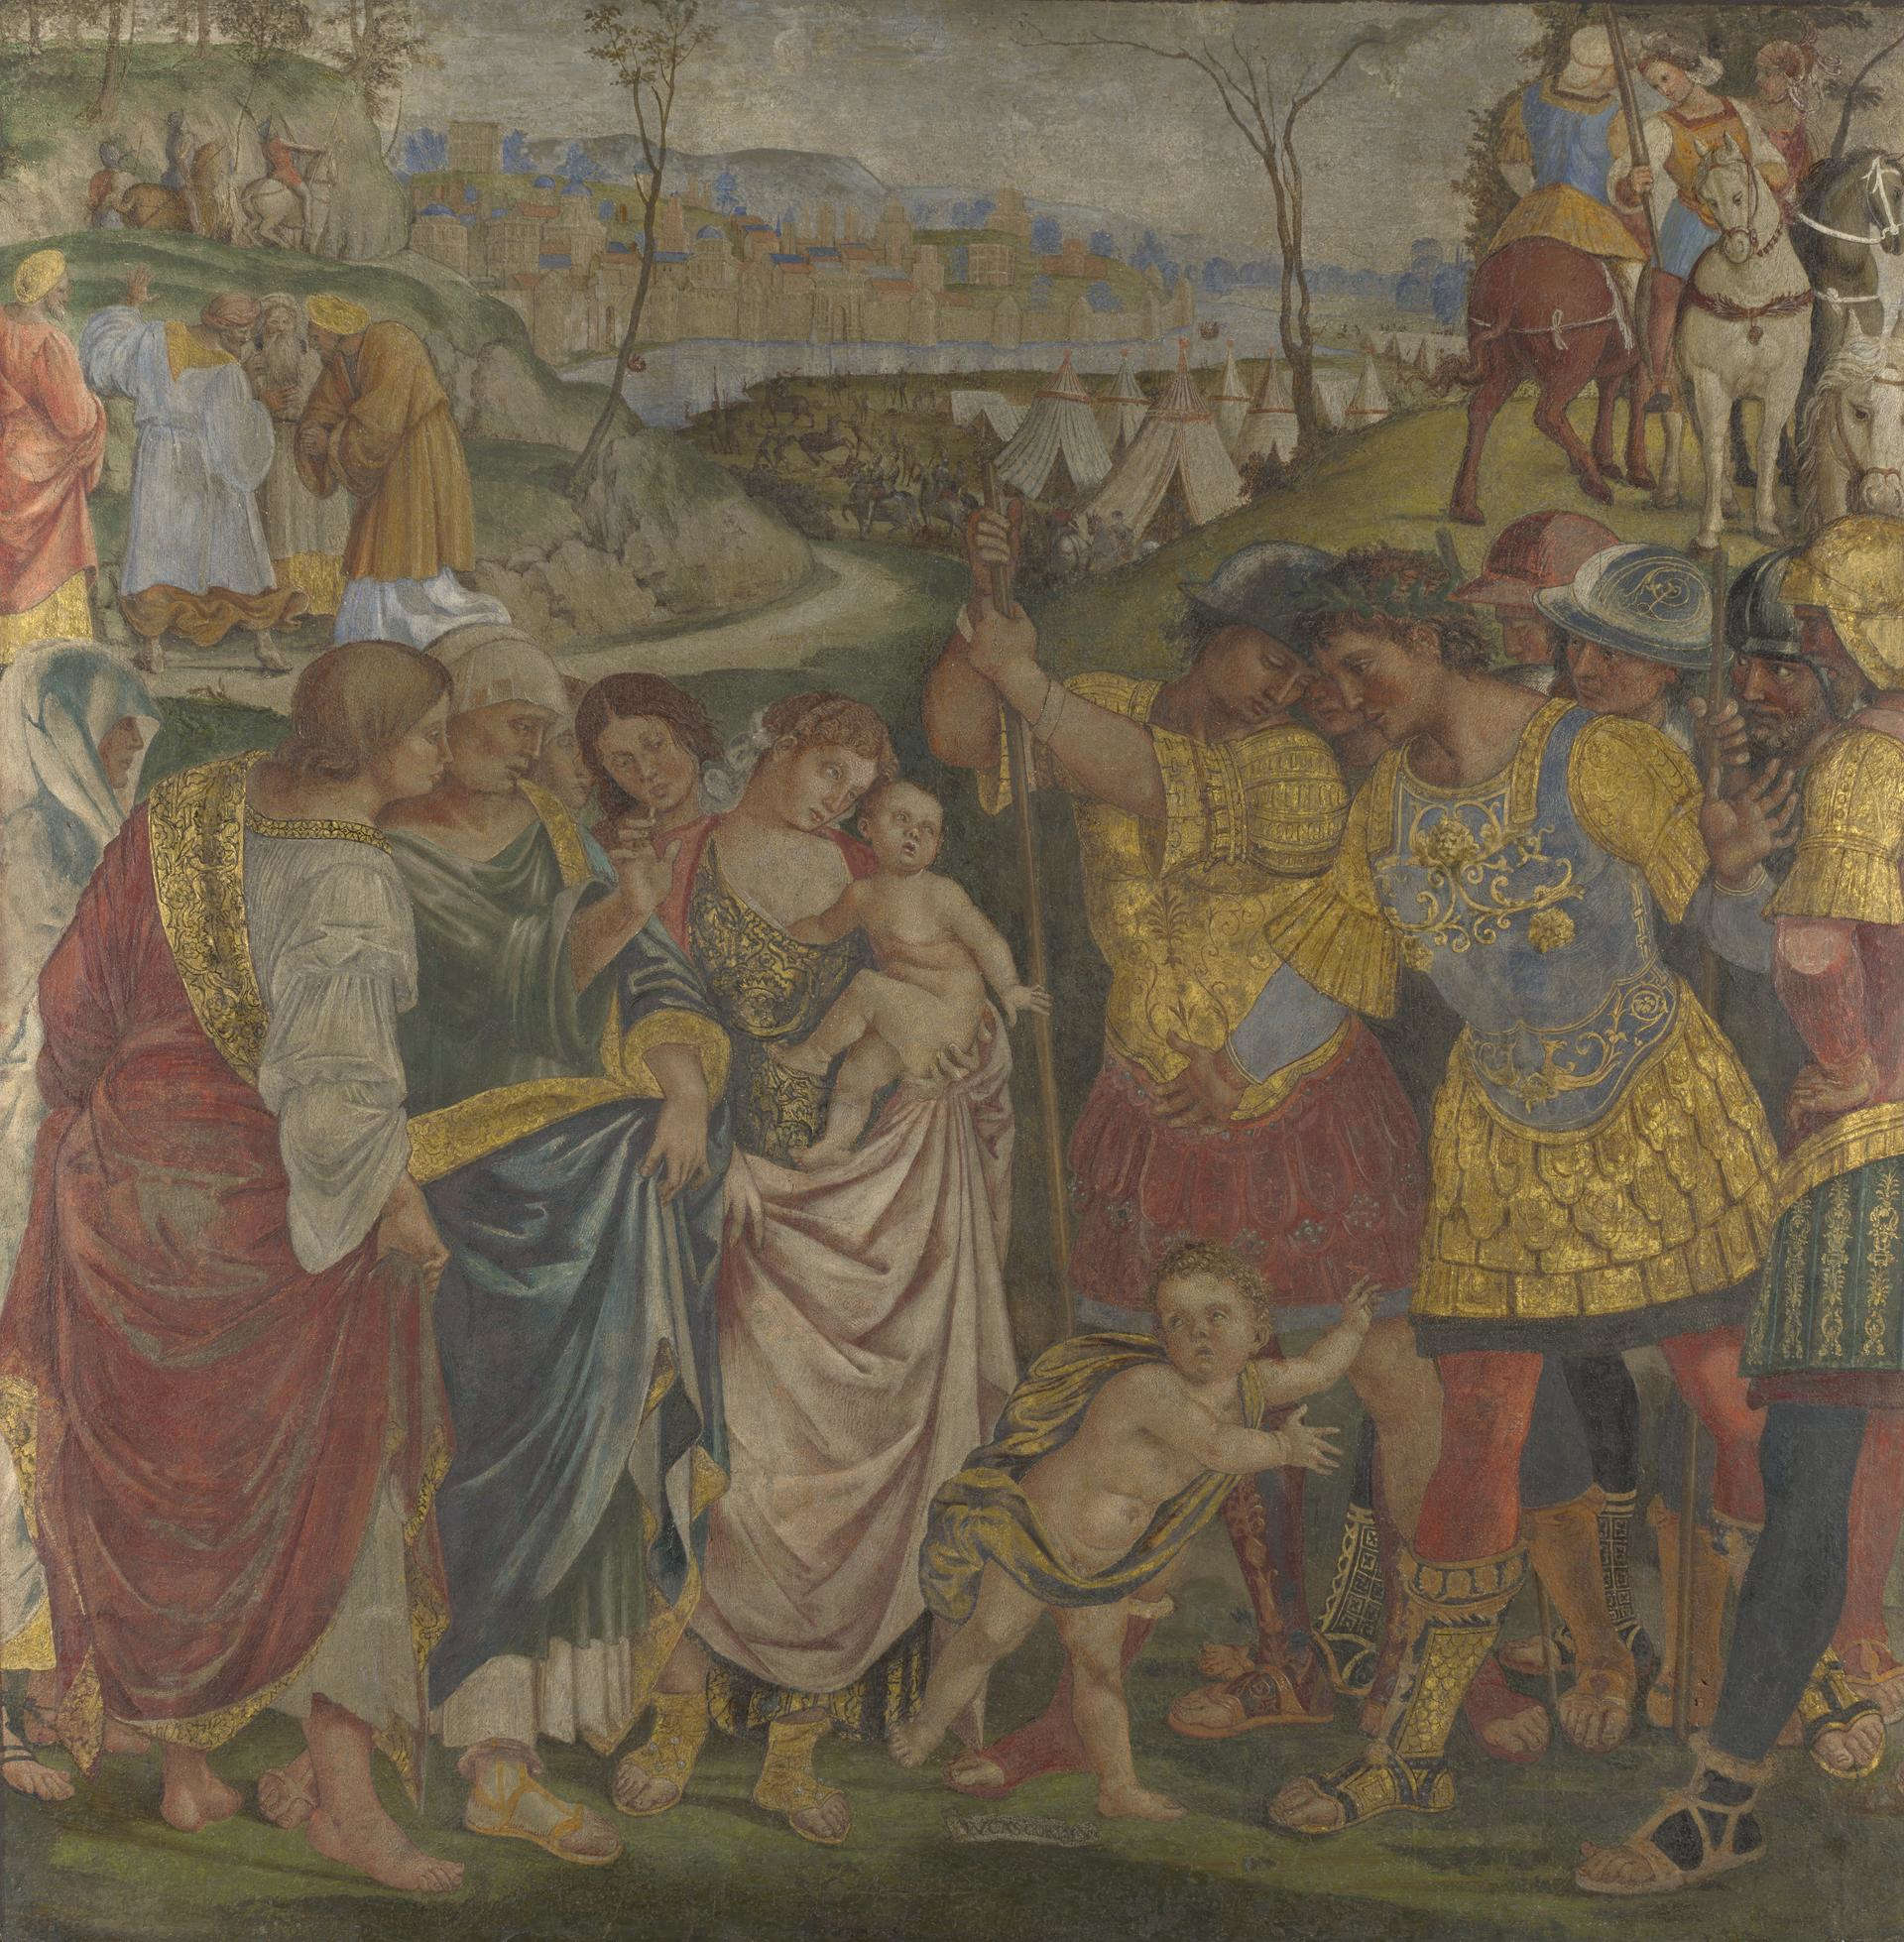 Luca Signorelli, Coriolan est persuadé par sa famille d'épargner Rome (vers 1509 ; fresque transférée sur toile, 125,7 x 125,7 cm ; Londres, National Gallery)